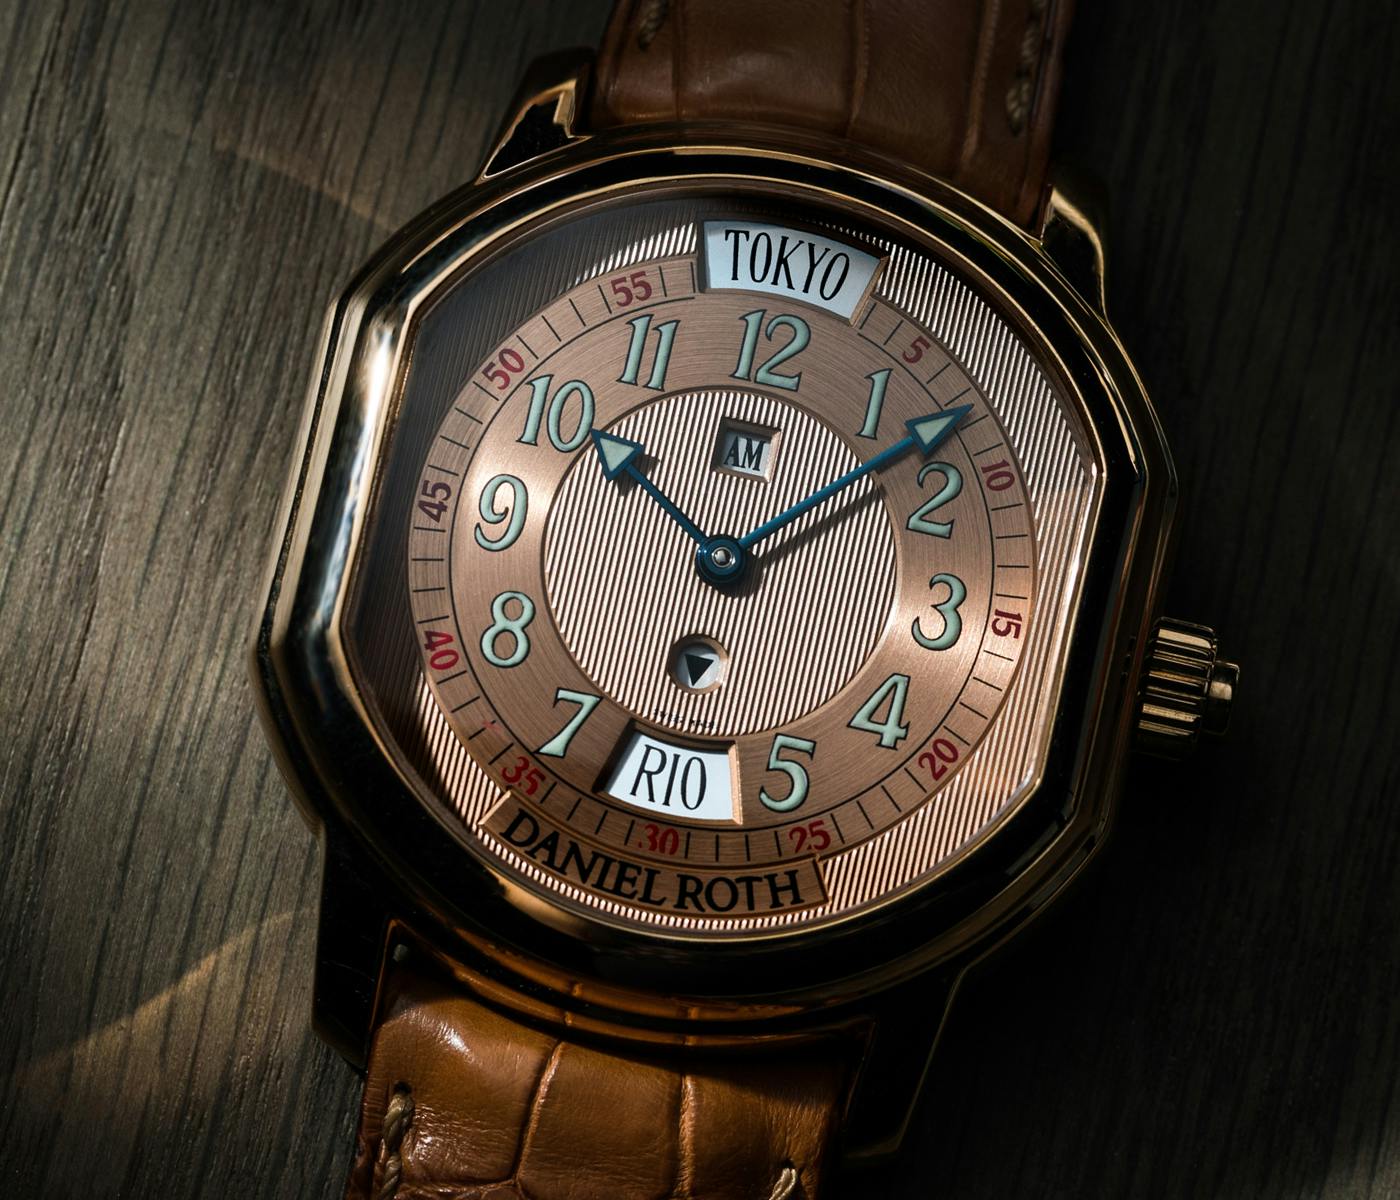 Buy Pre-owned & Unworn Luxury Watches in London - The Luxury Hut